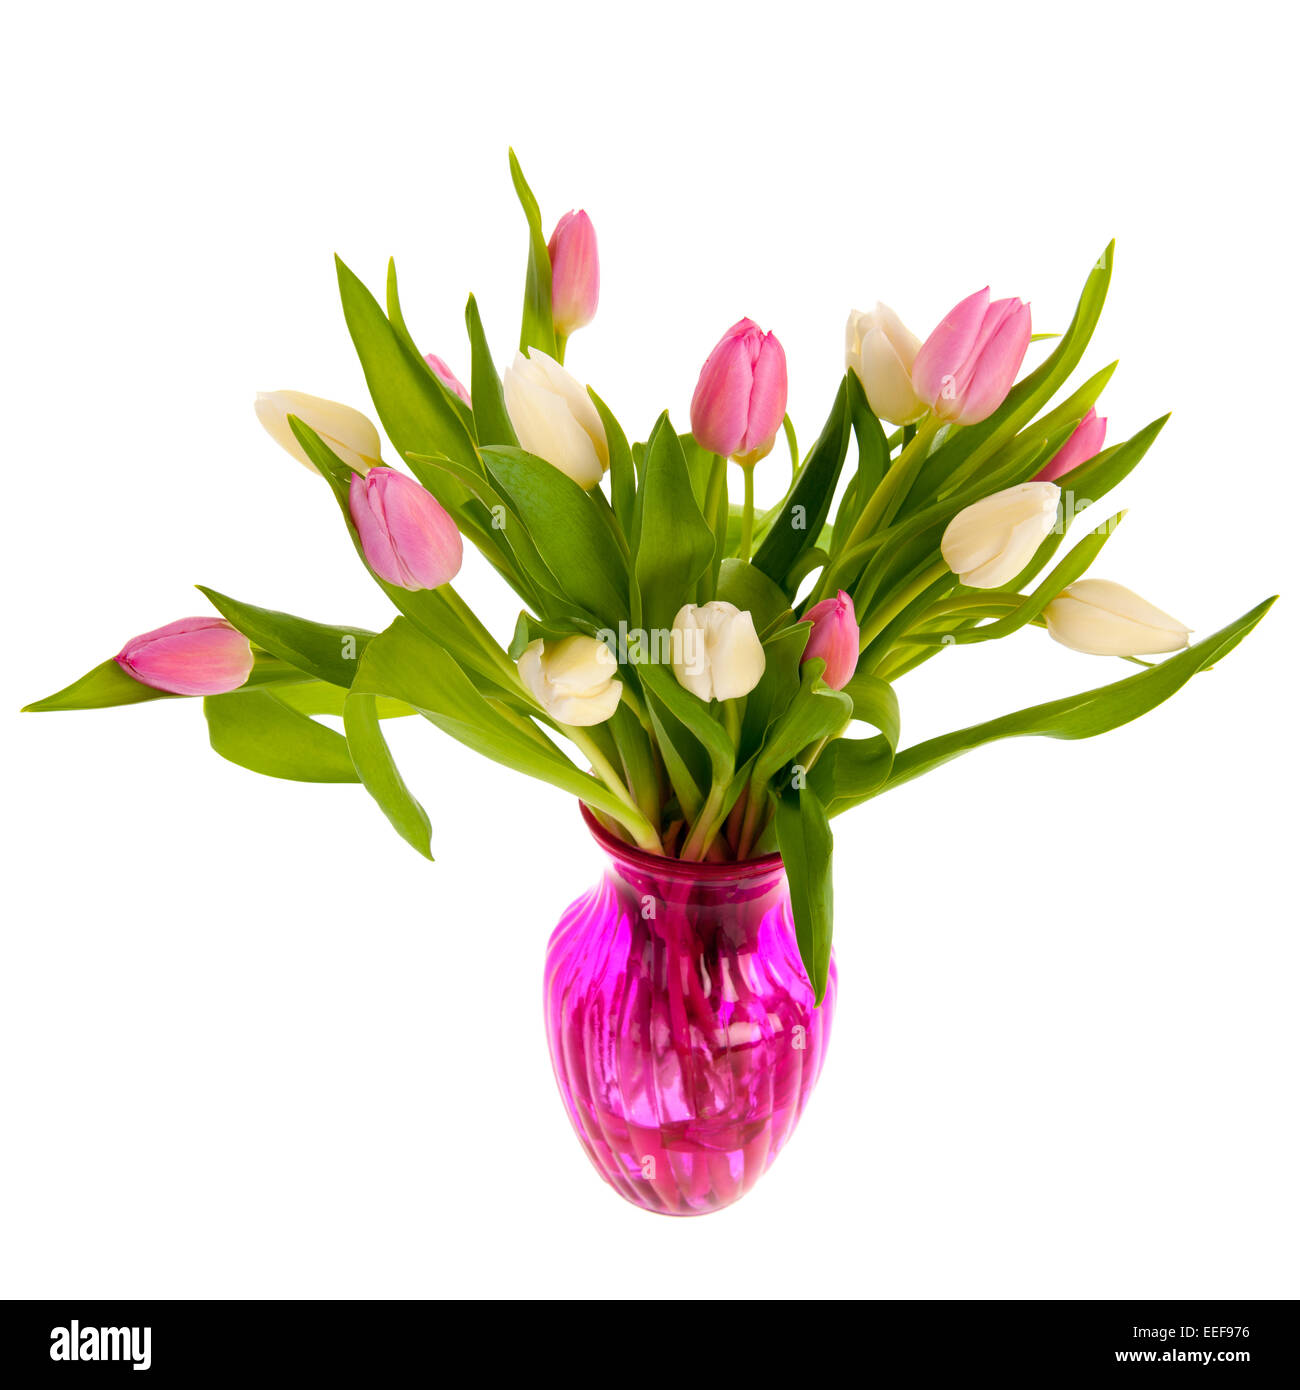 Tulipes roses et blanches en verre vase isolé sur fond blanc Banque D'Images